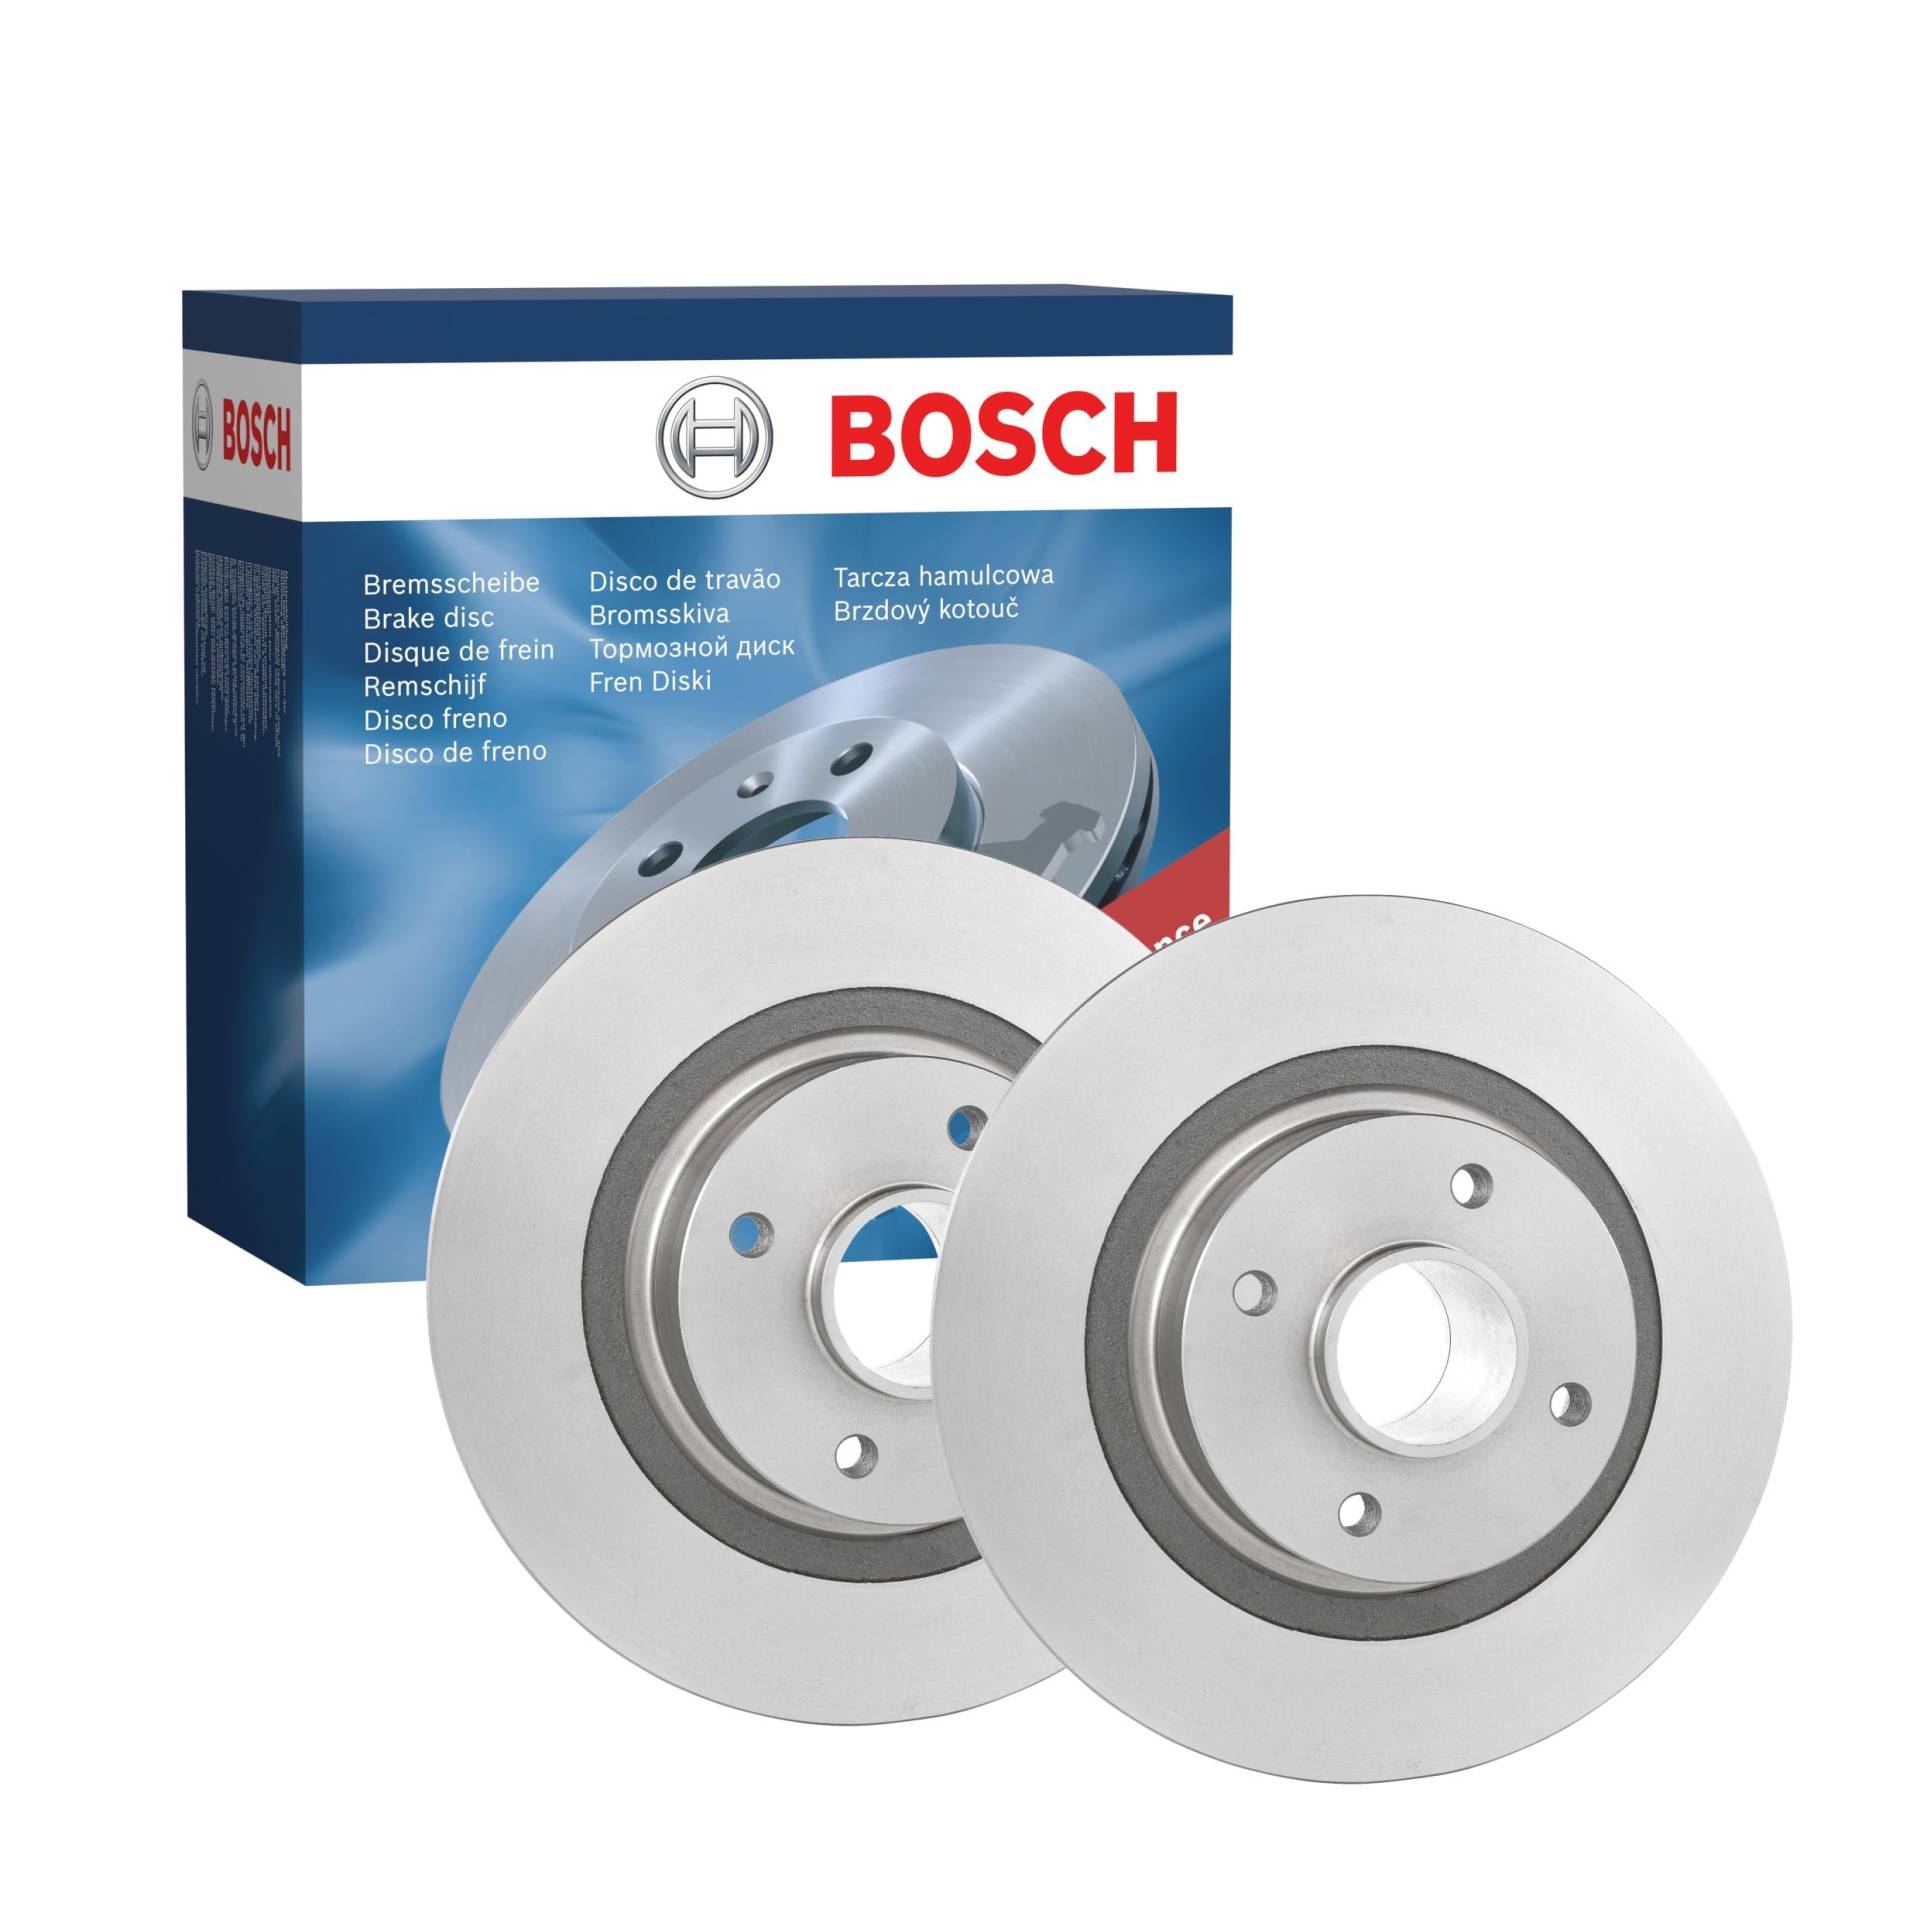 Bosch 986479196 Bremsscheibe von Bosch Automotive